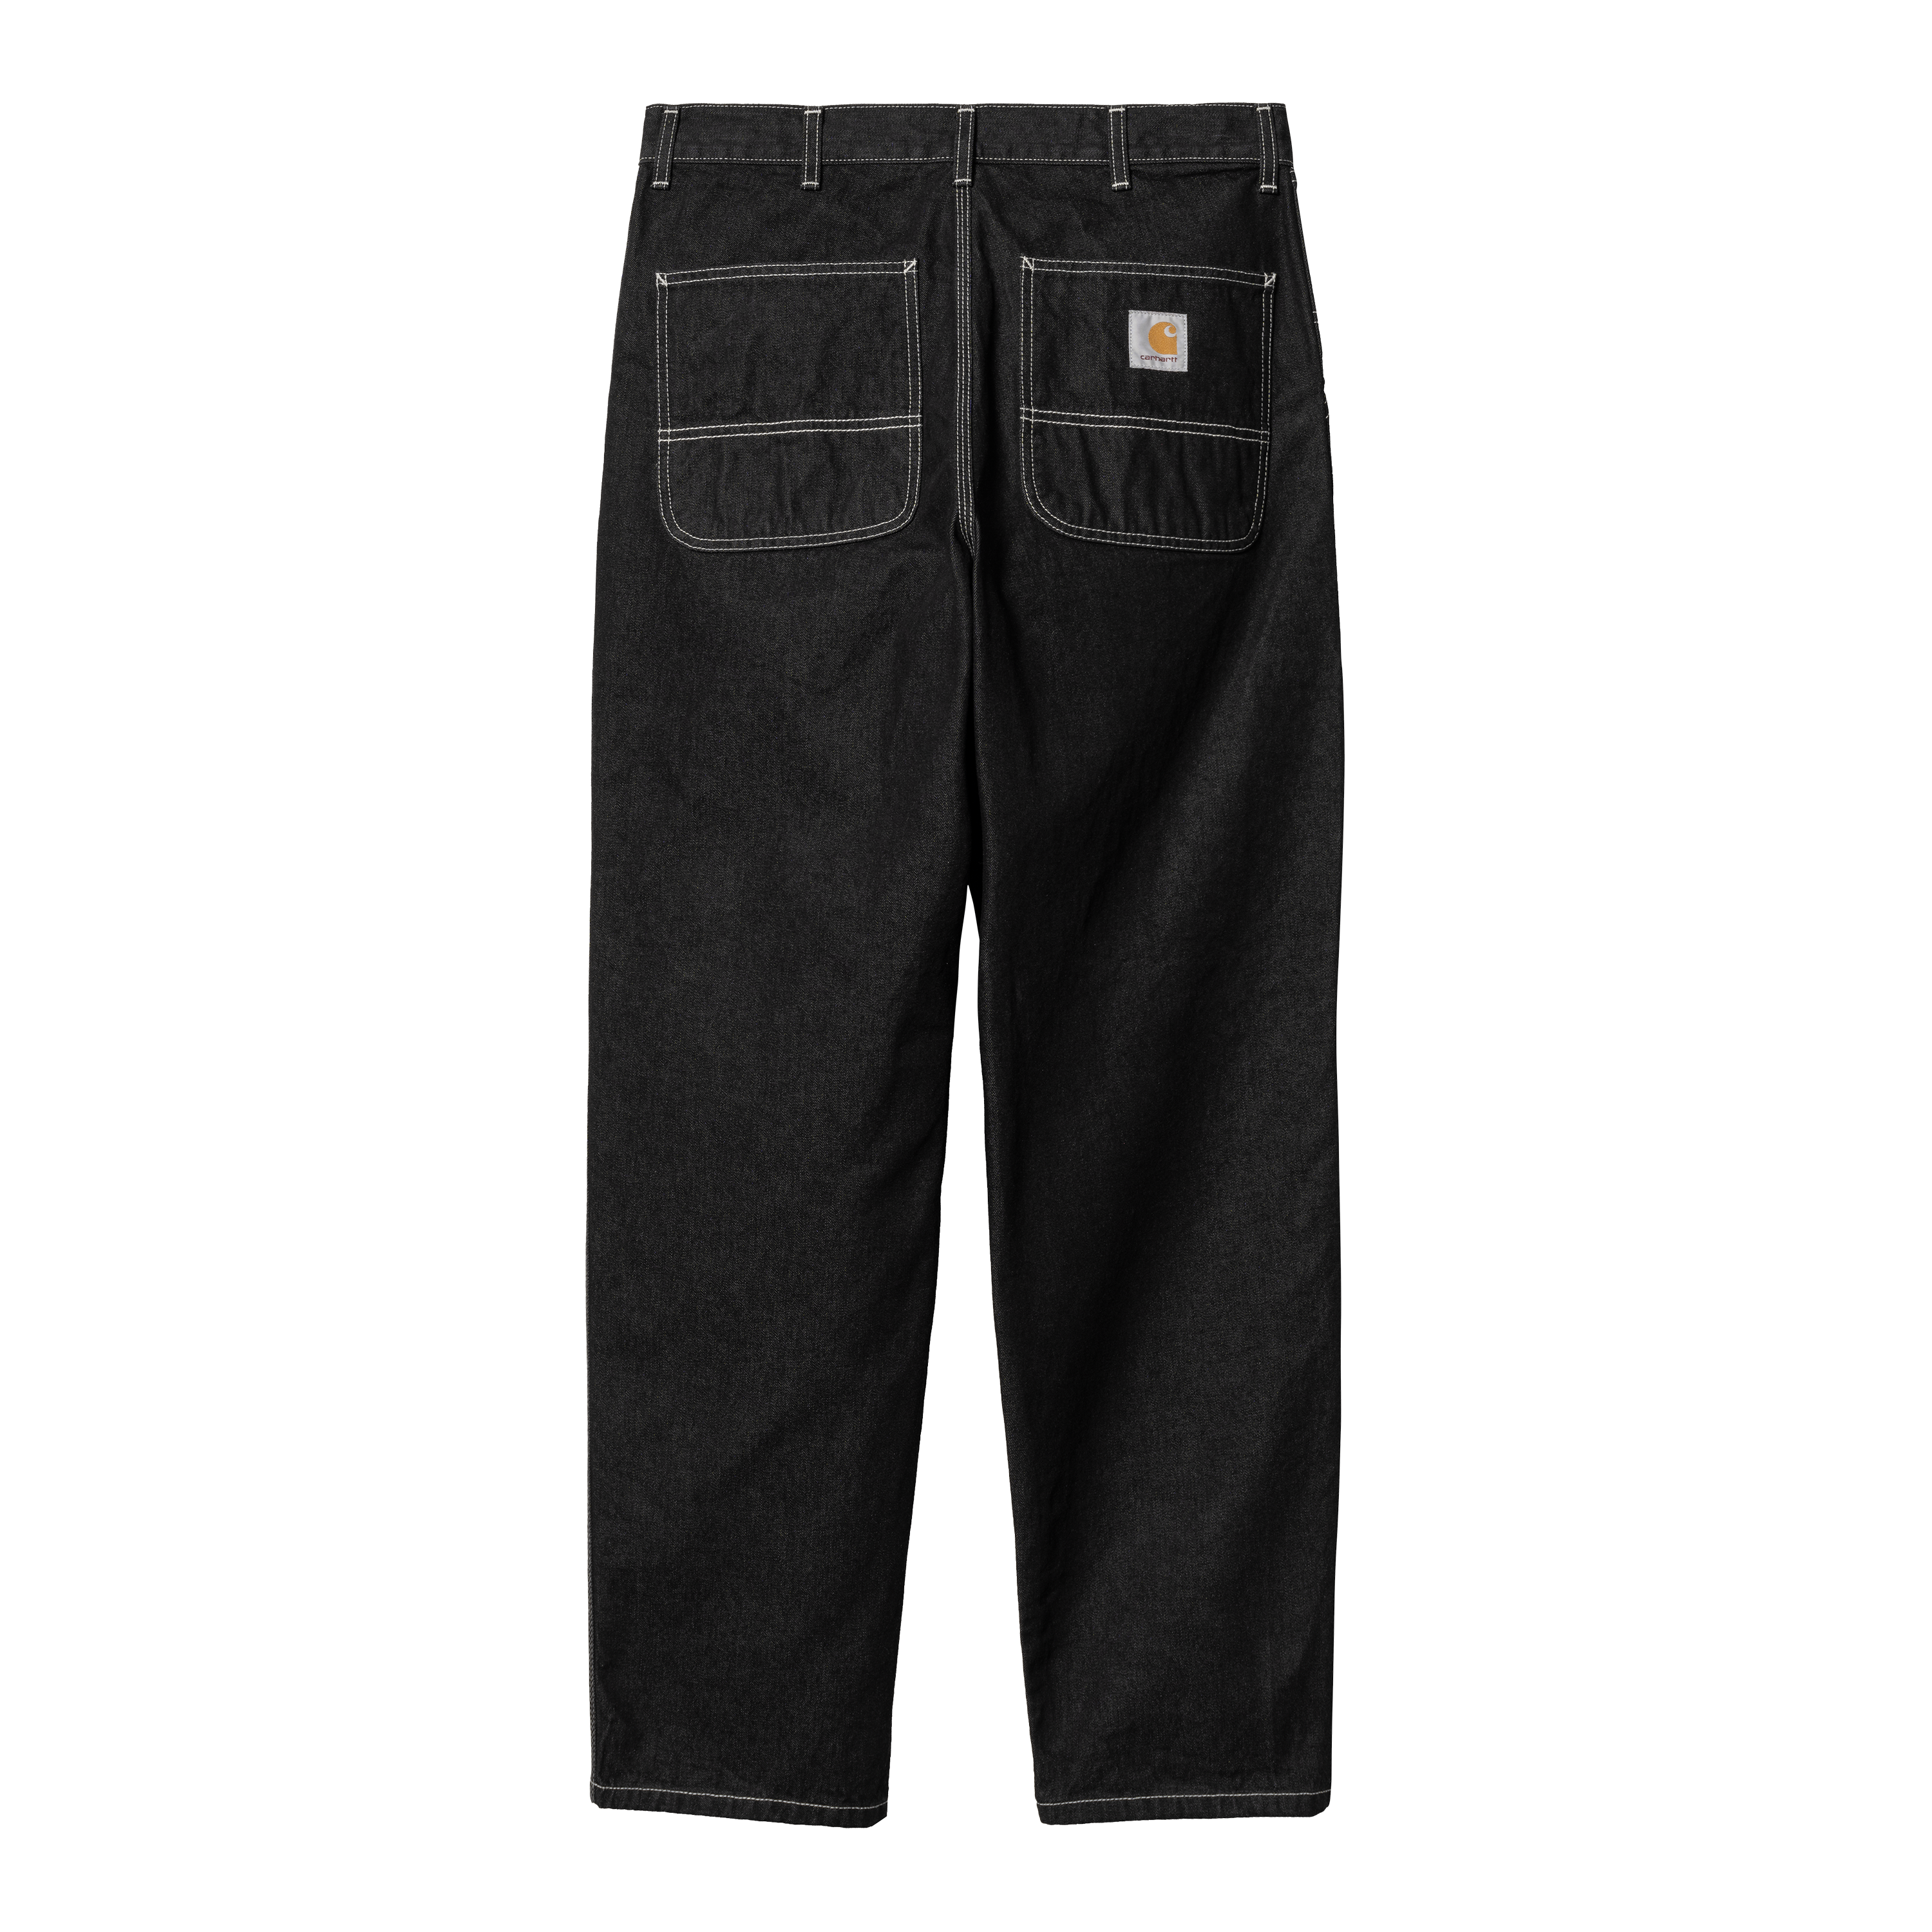 Carhartt WIP Simple Pant in Black